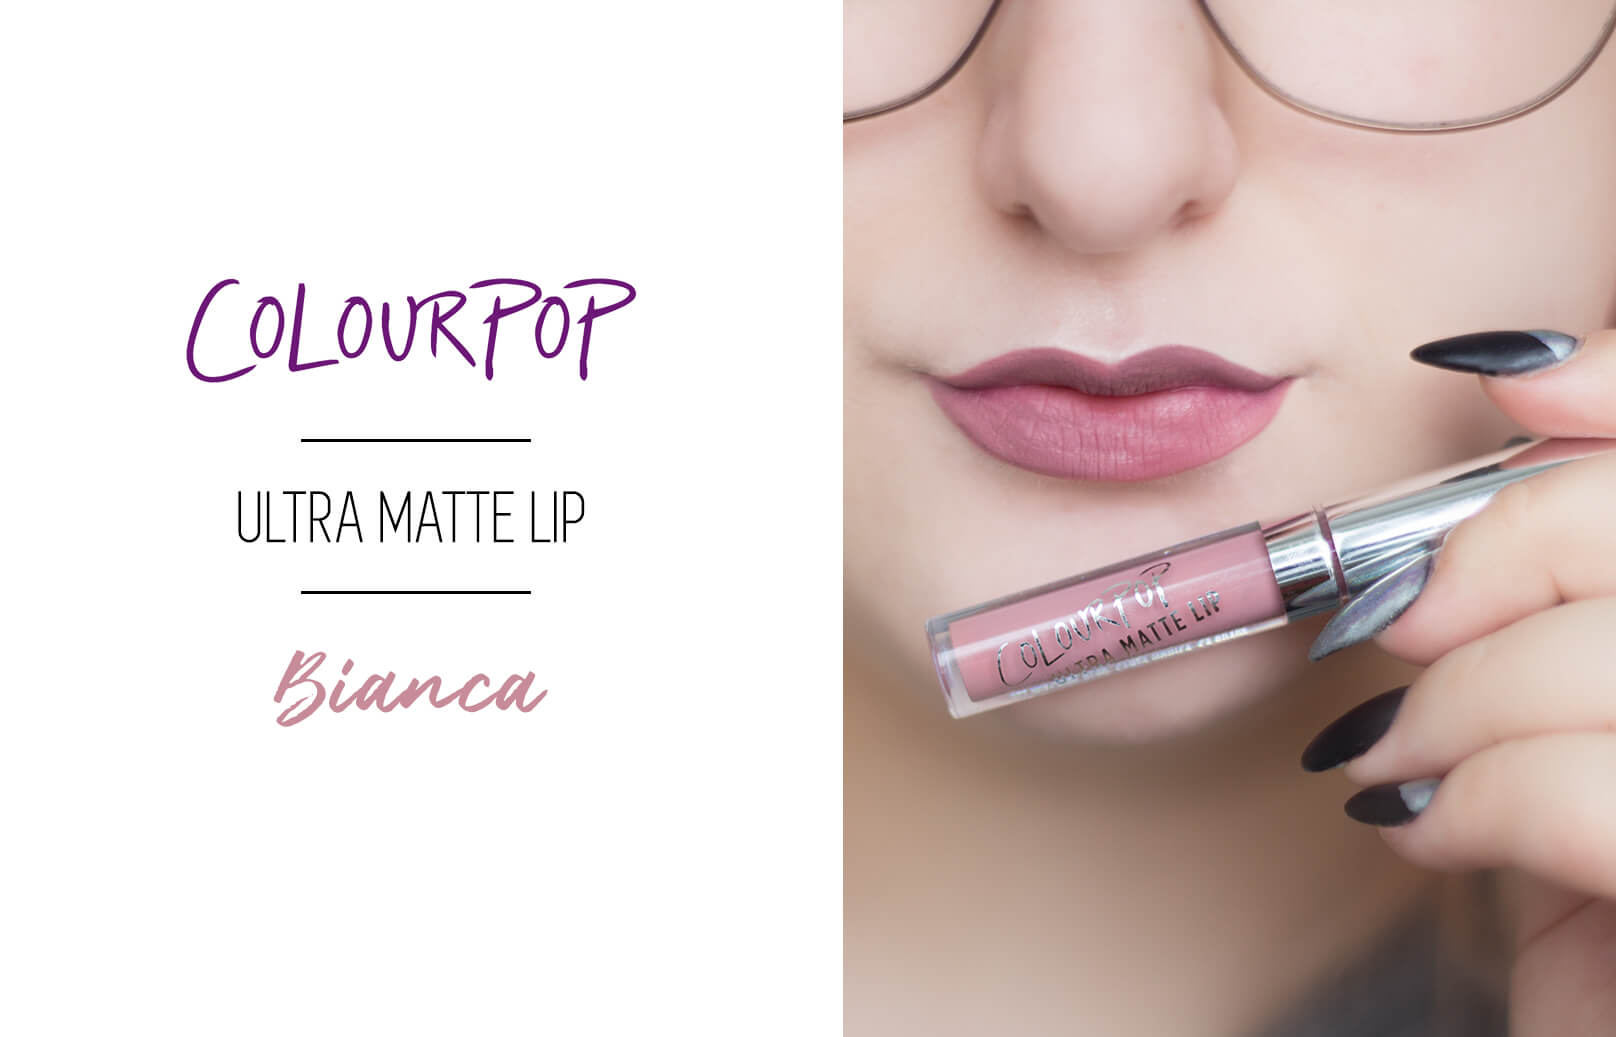 Colourpop Ultra Matte Lips • It’s Vintage Set!